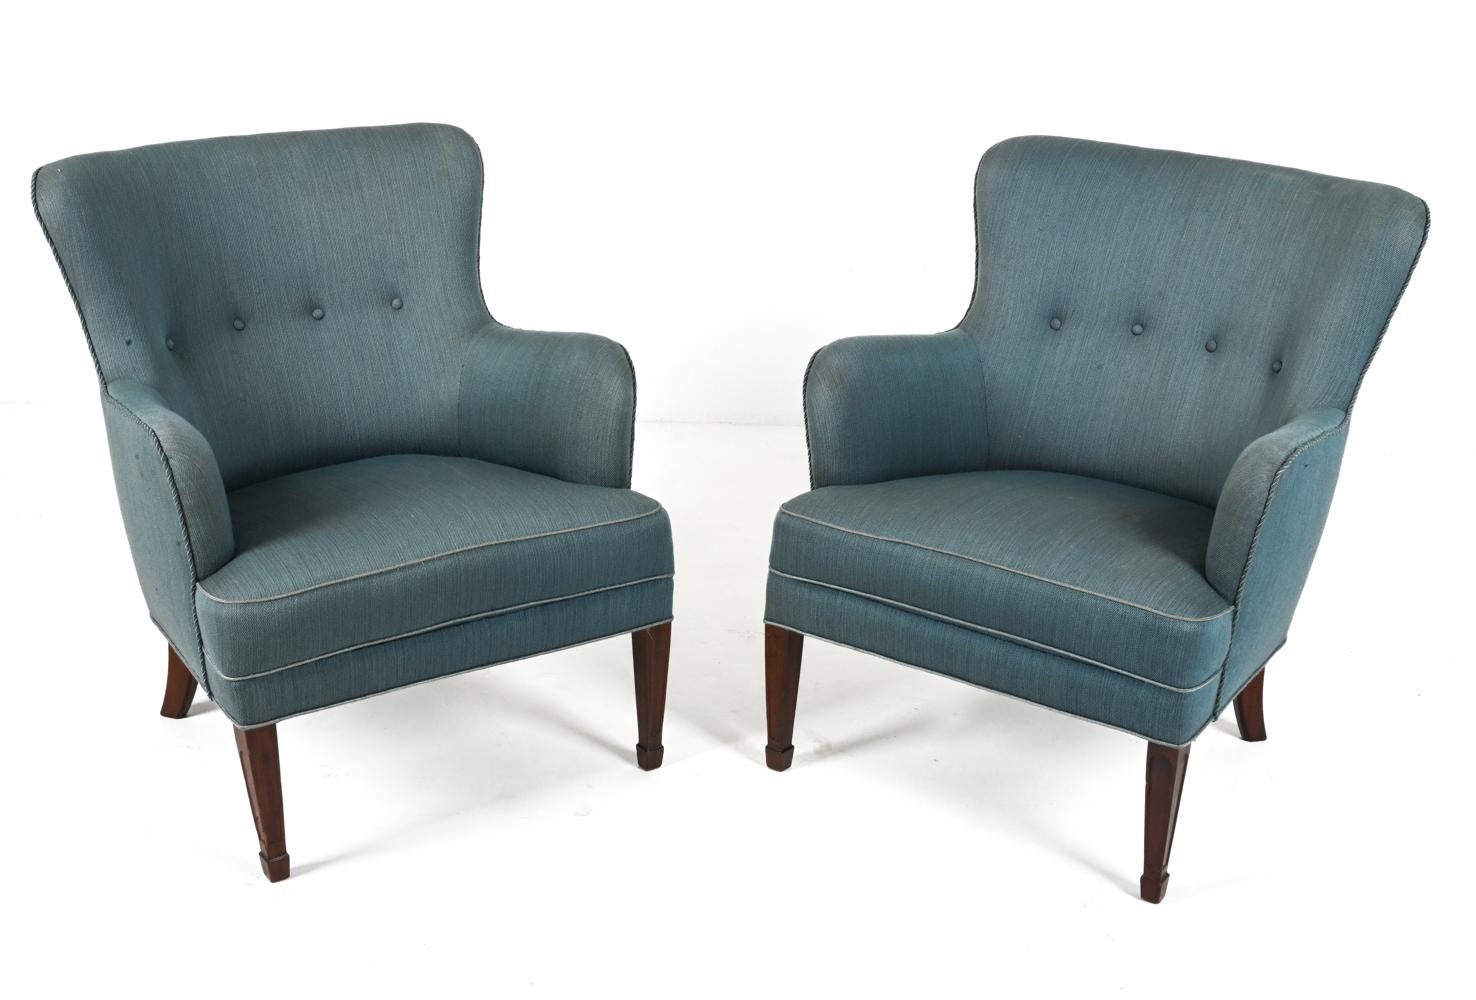 Wir präsentieren ein exquisites Paar Sessel des berühmten Frits Henningsen aus den 1940er Jahren. Diese mit Raffinesse und Liebe zum Detail gefertigten Sessel verkörpern die Essenz der dänischen modernen Eleganz. 

Die Beine aus massivem Mahagoni